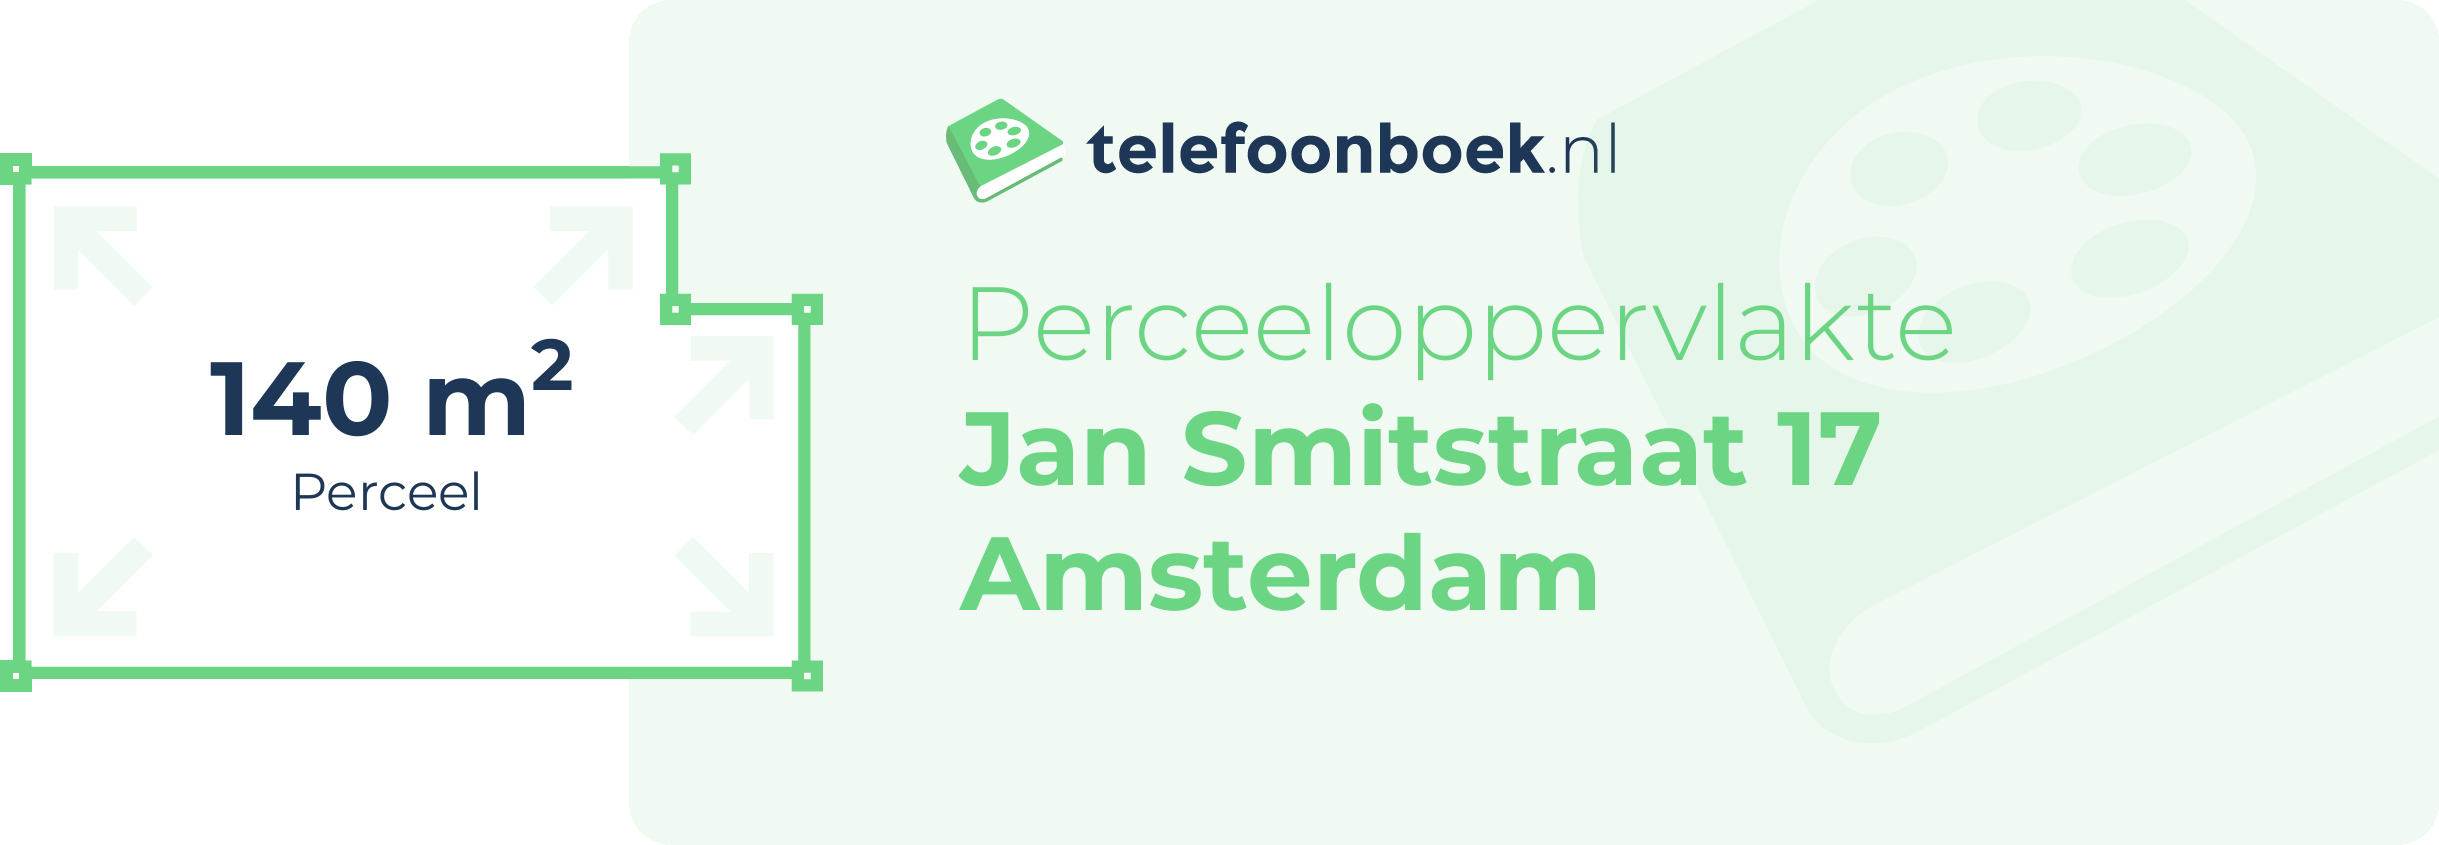 Perceeloppervlakte Jan Smitstraat 17 Amsterdam